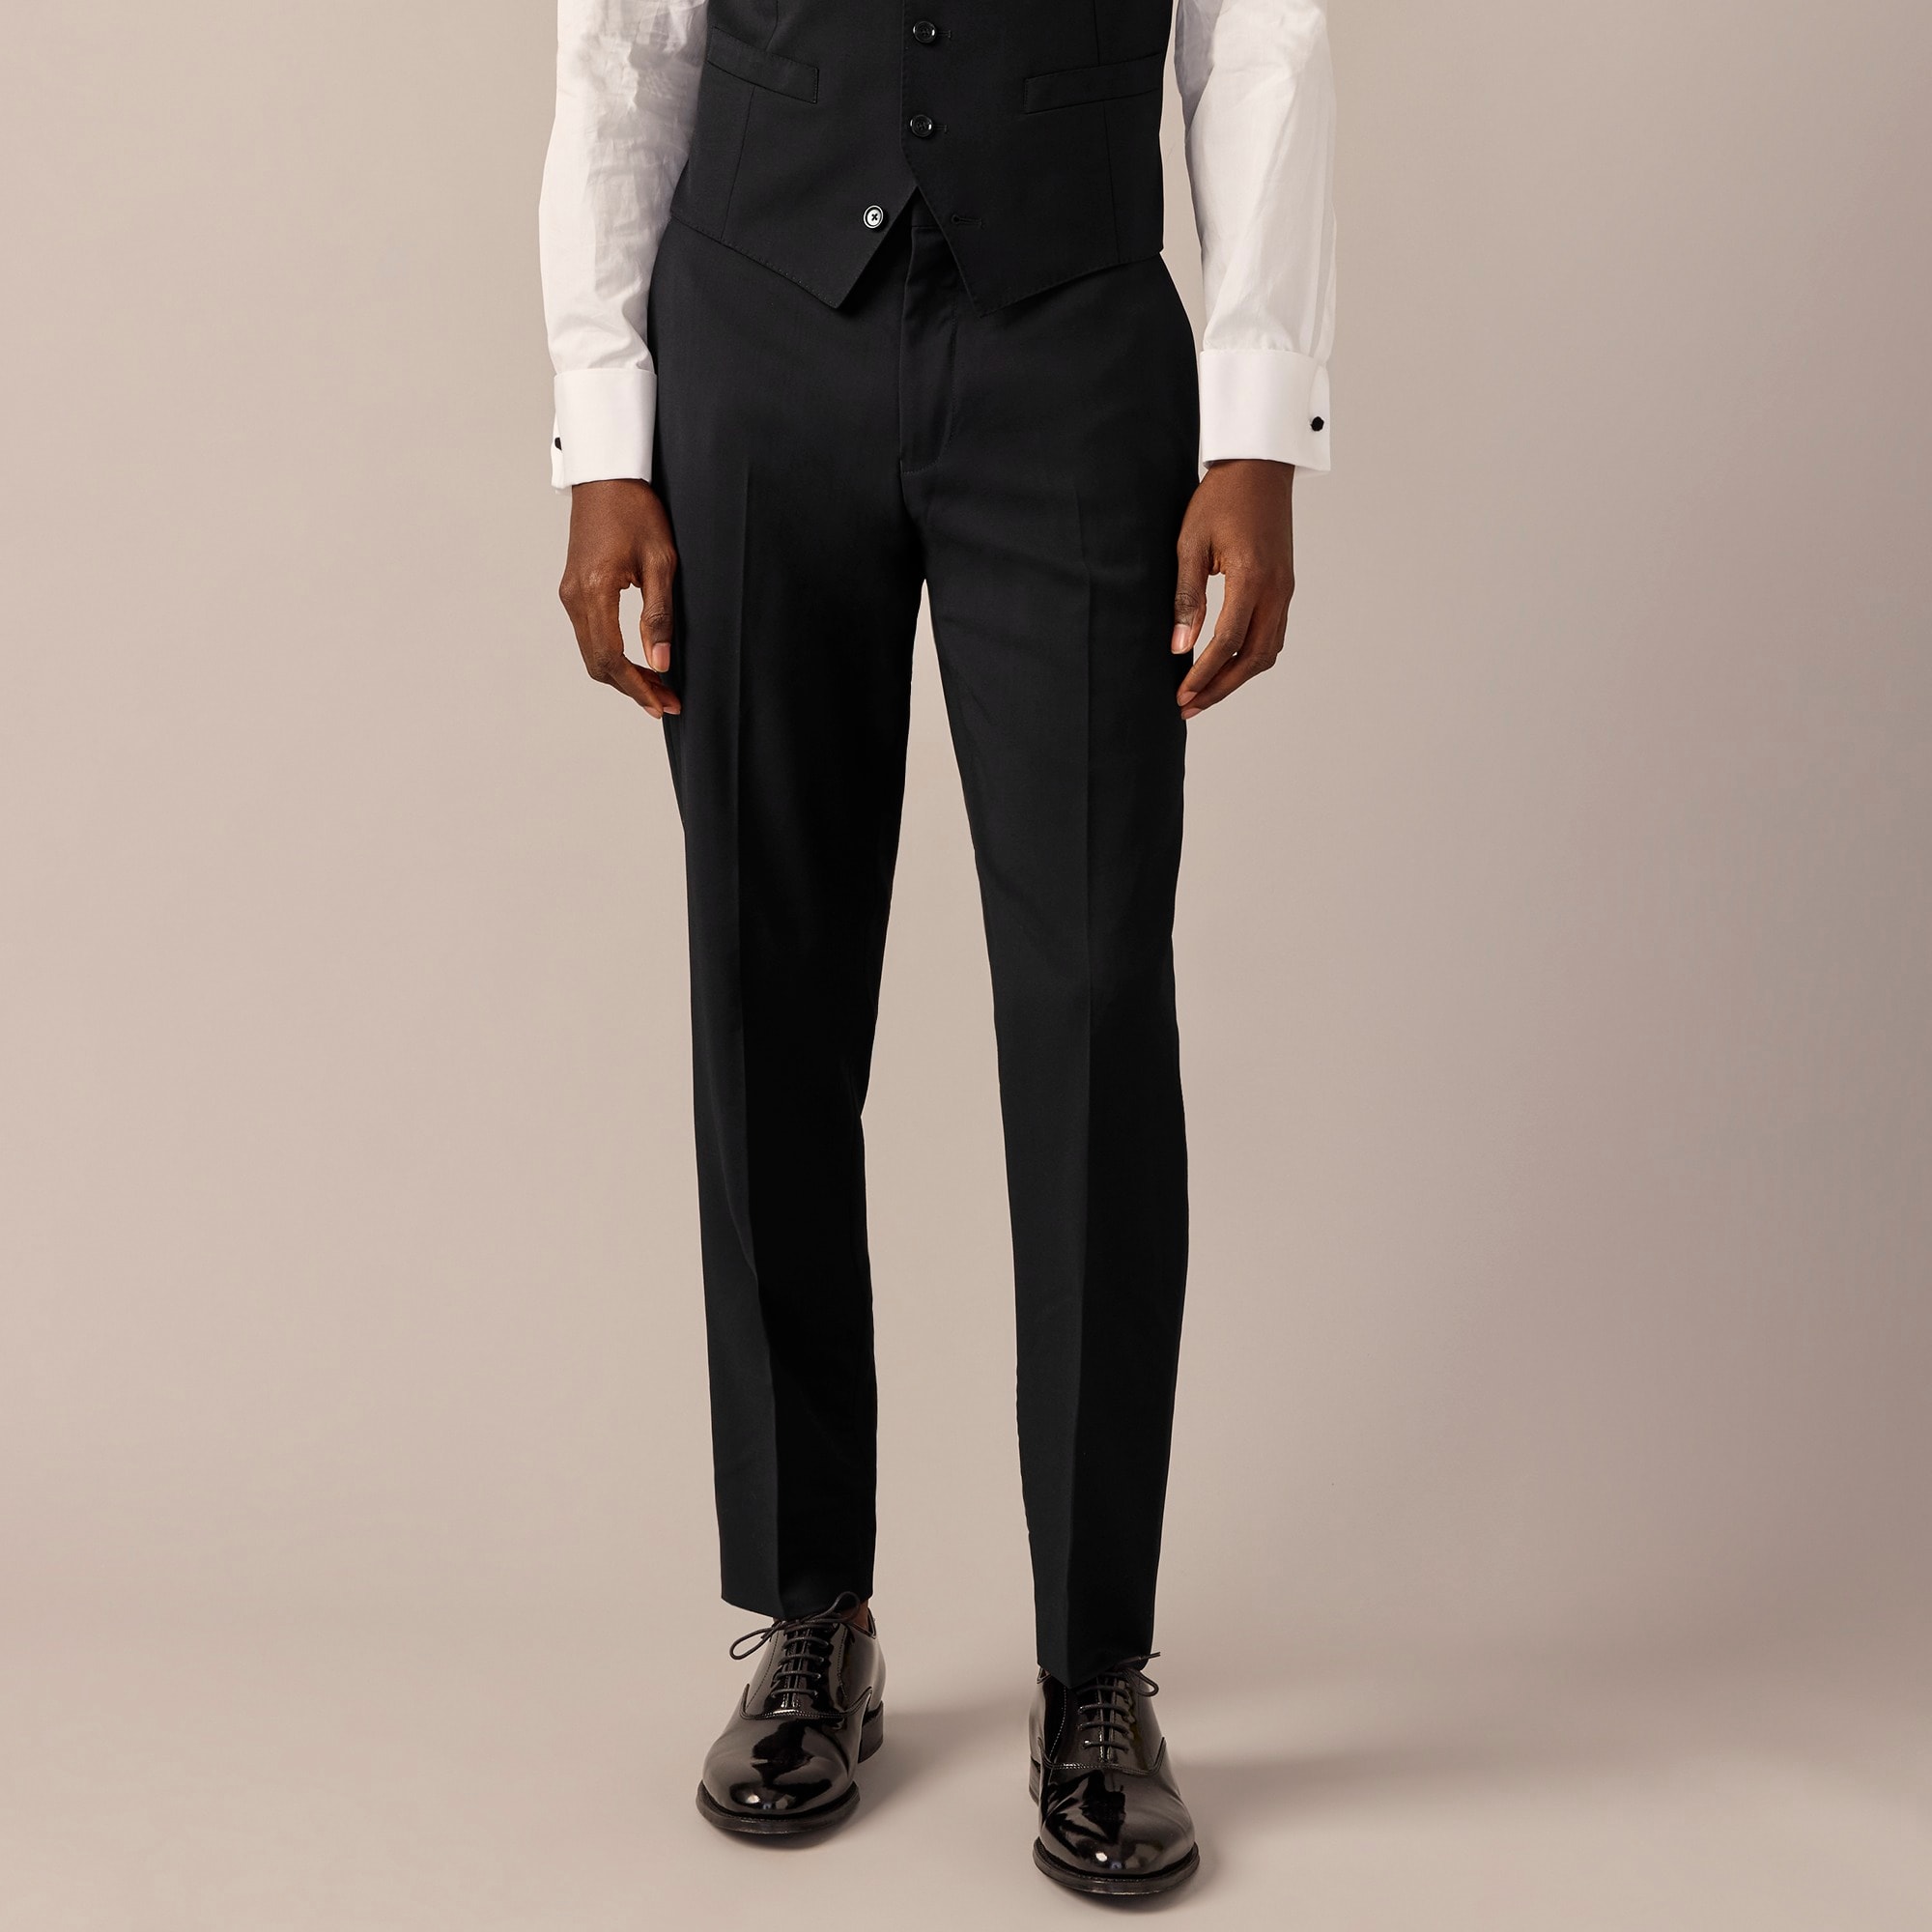 Jcrew Ludlow Slim-fit tuxedo pant in Italian wool